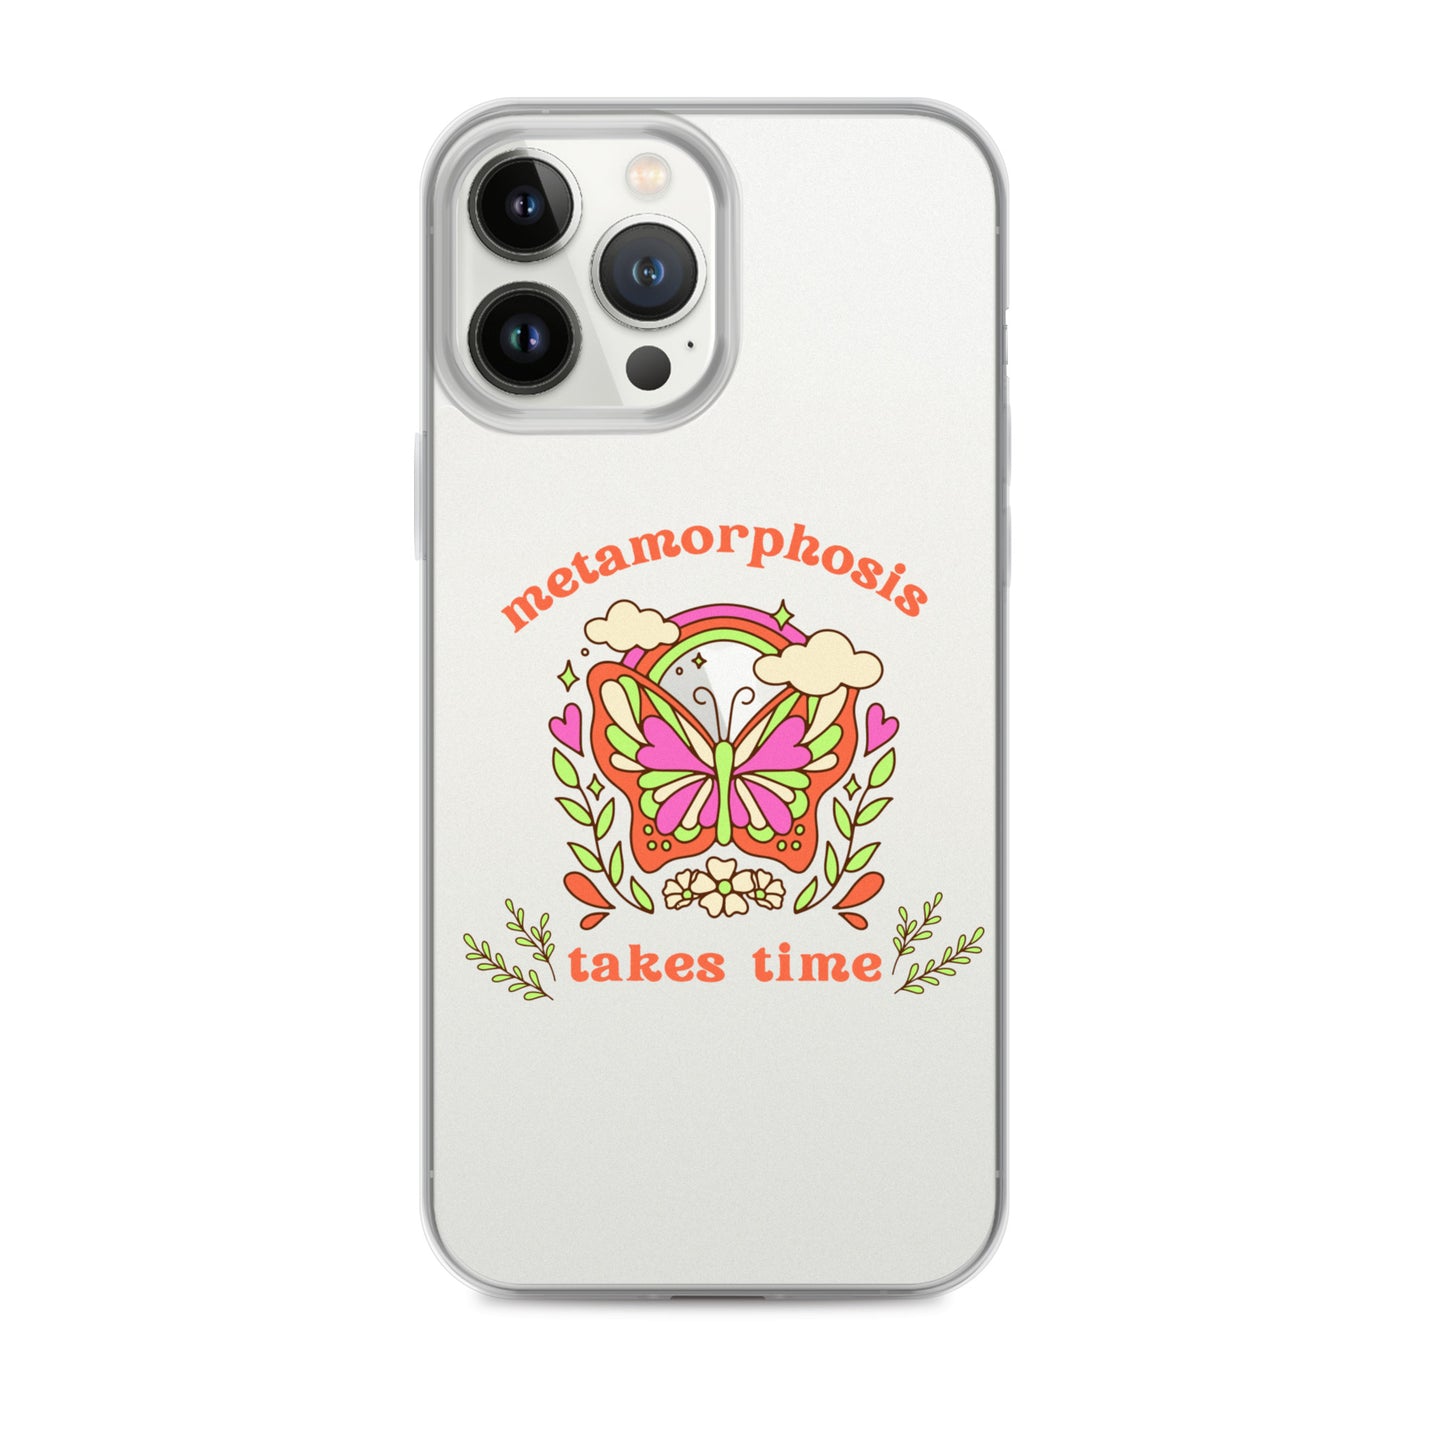 metamorphosis - iPhone® case